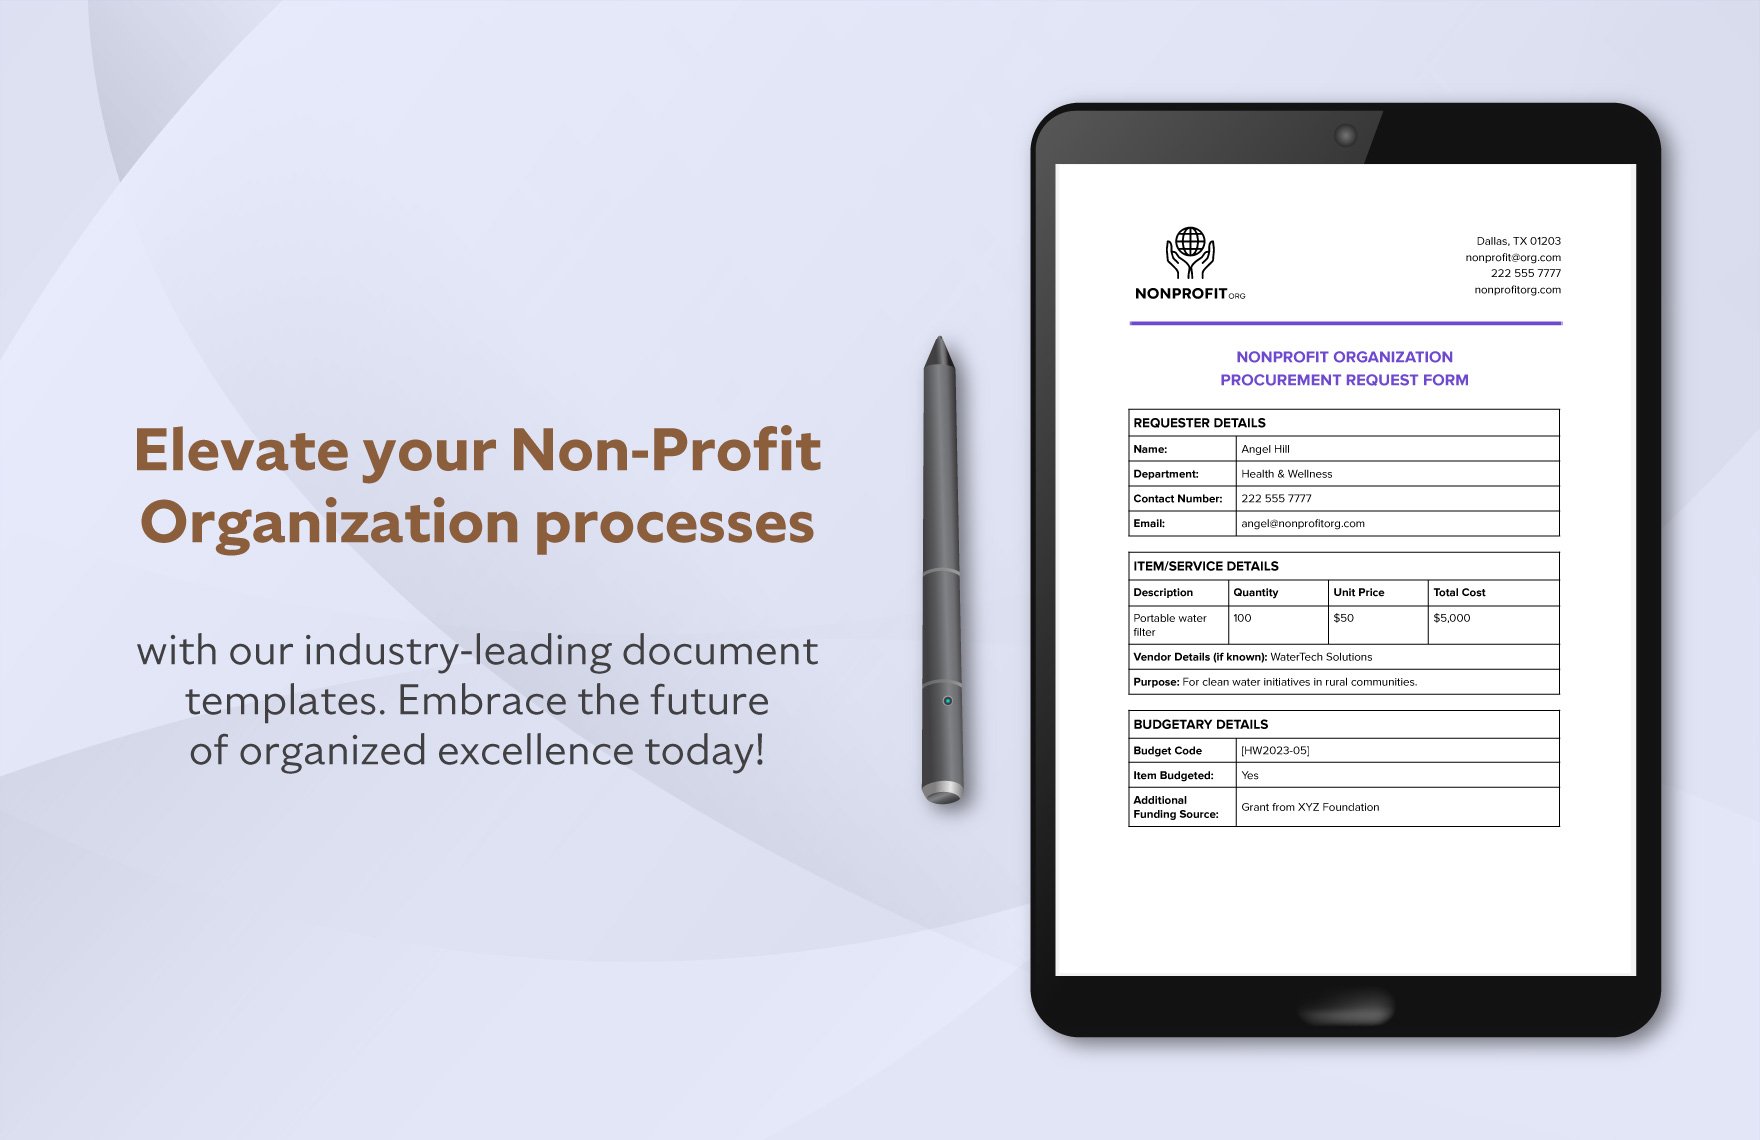 Nonprofit Organization Procurement Request Form Template